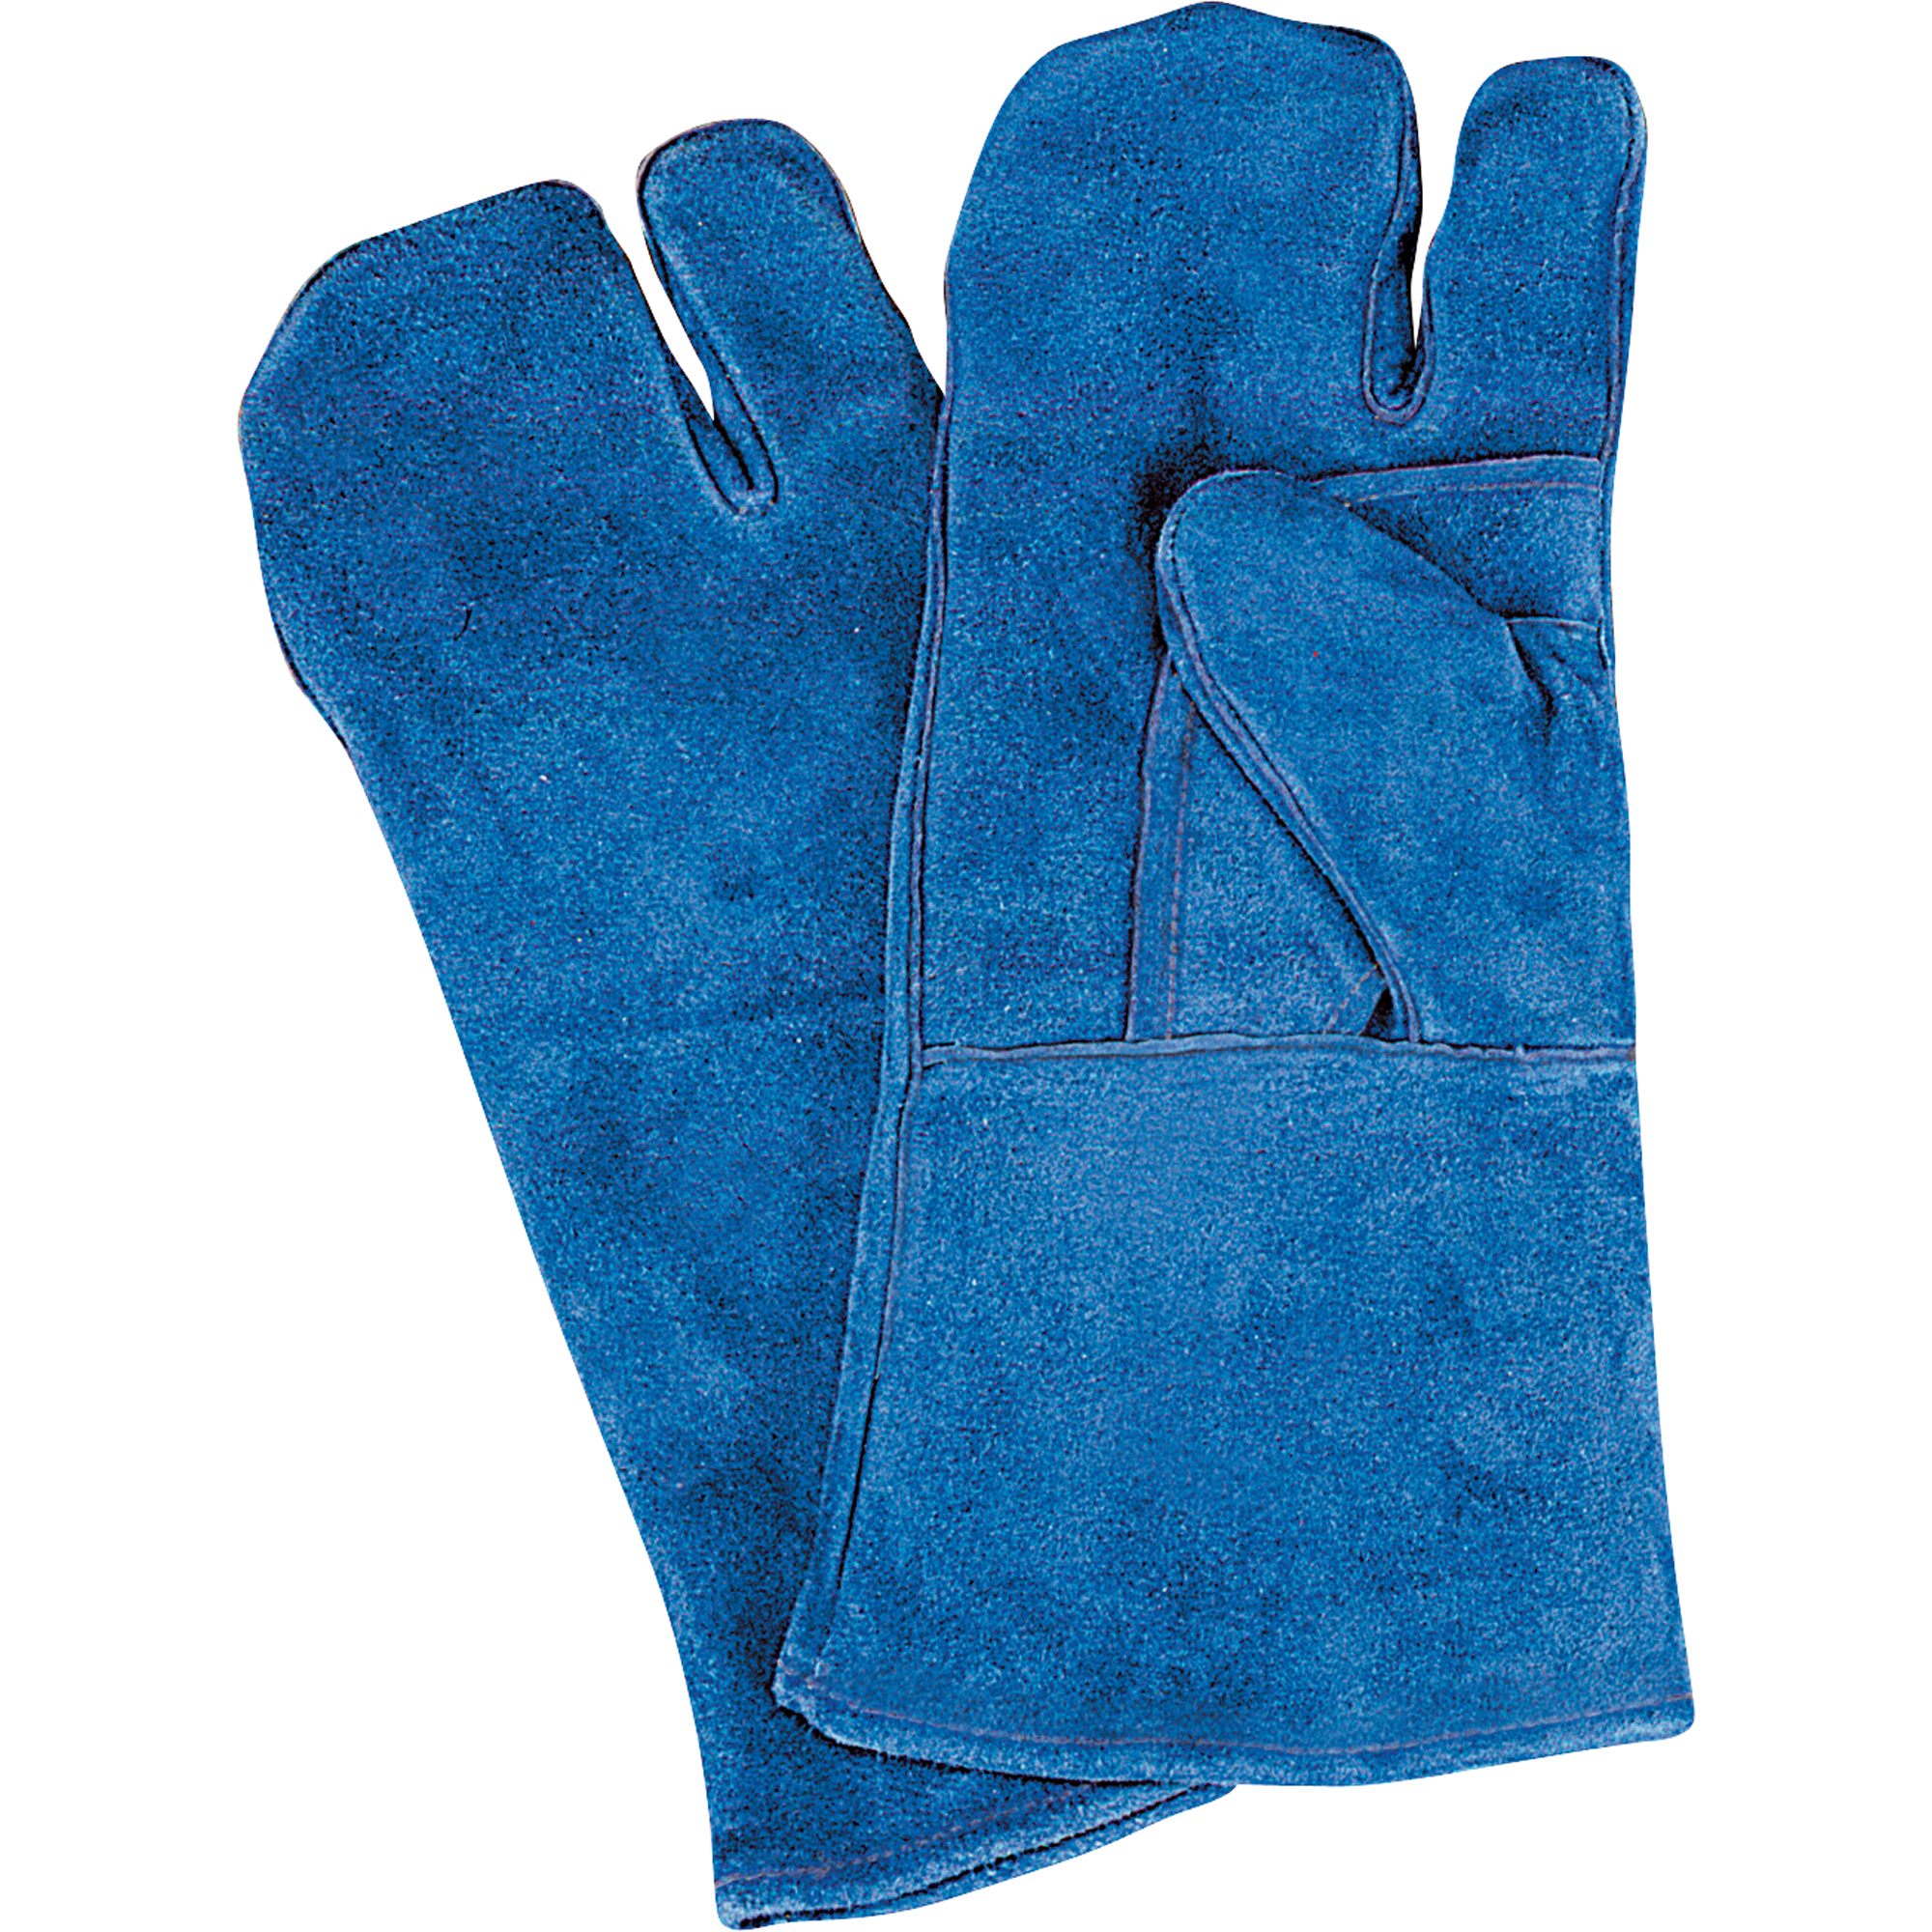 Gants de soudure Blue welding – Argos Polynésie